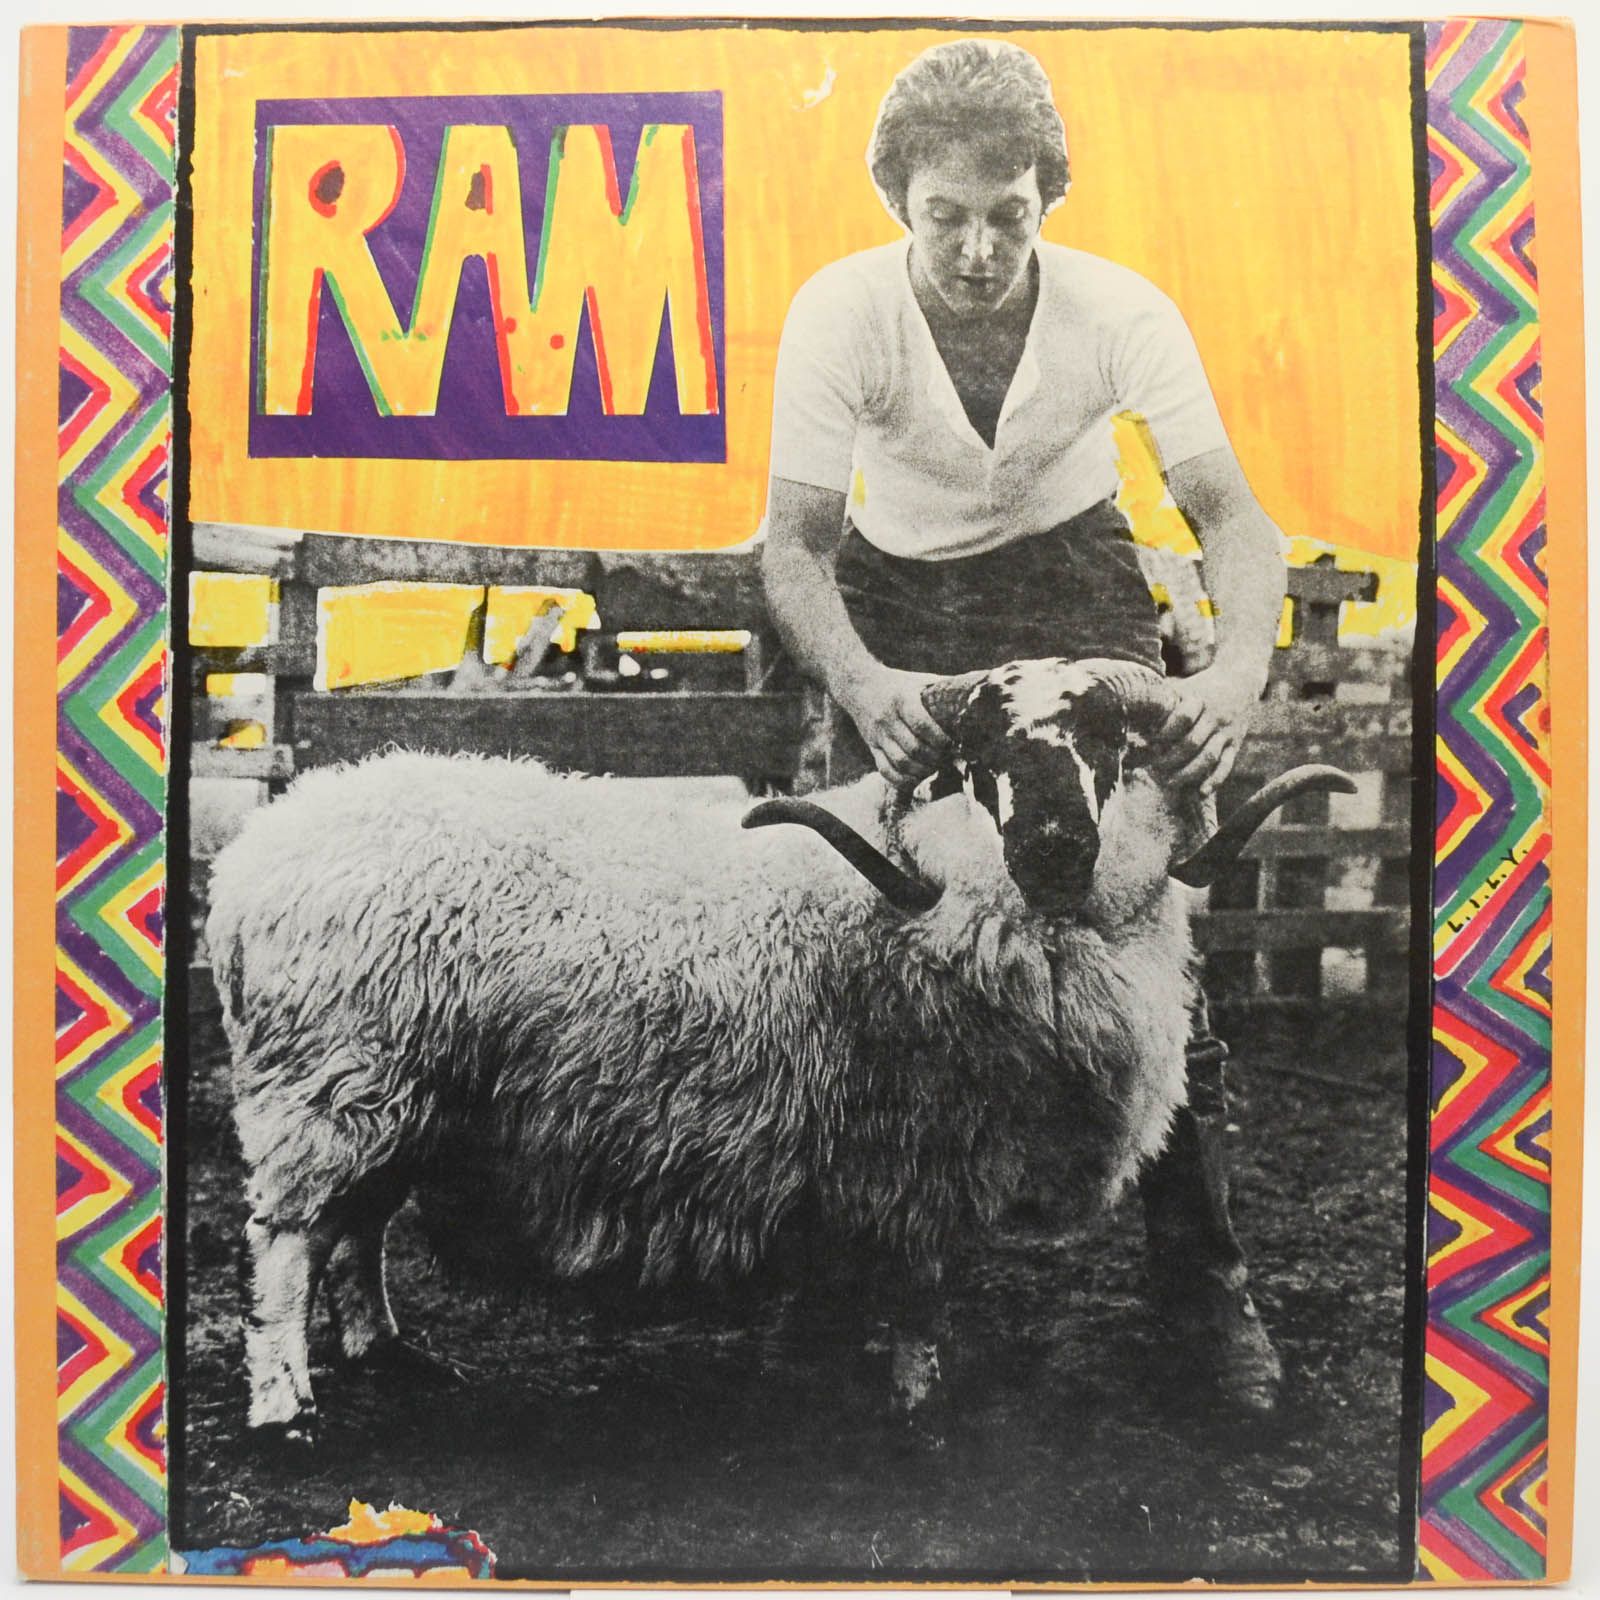 Paul & Linda McCartney — Ram (USA), 1971